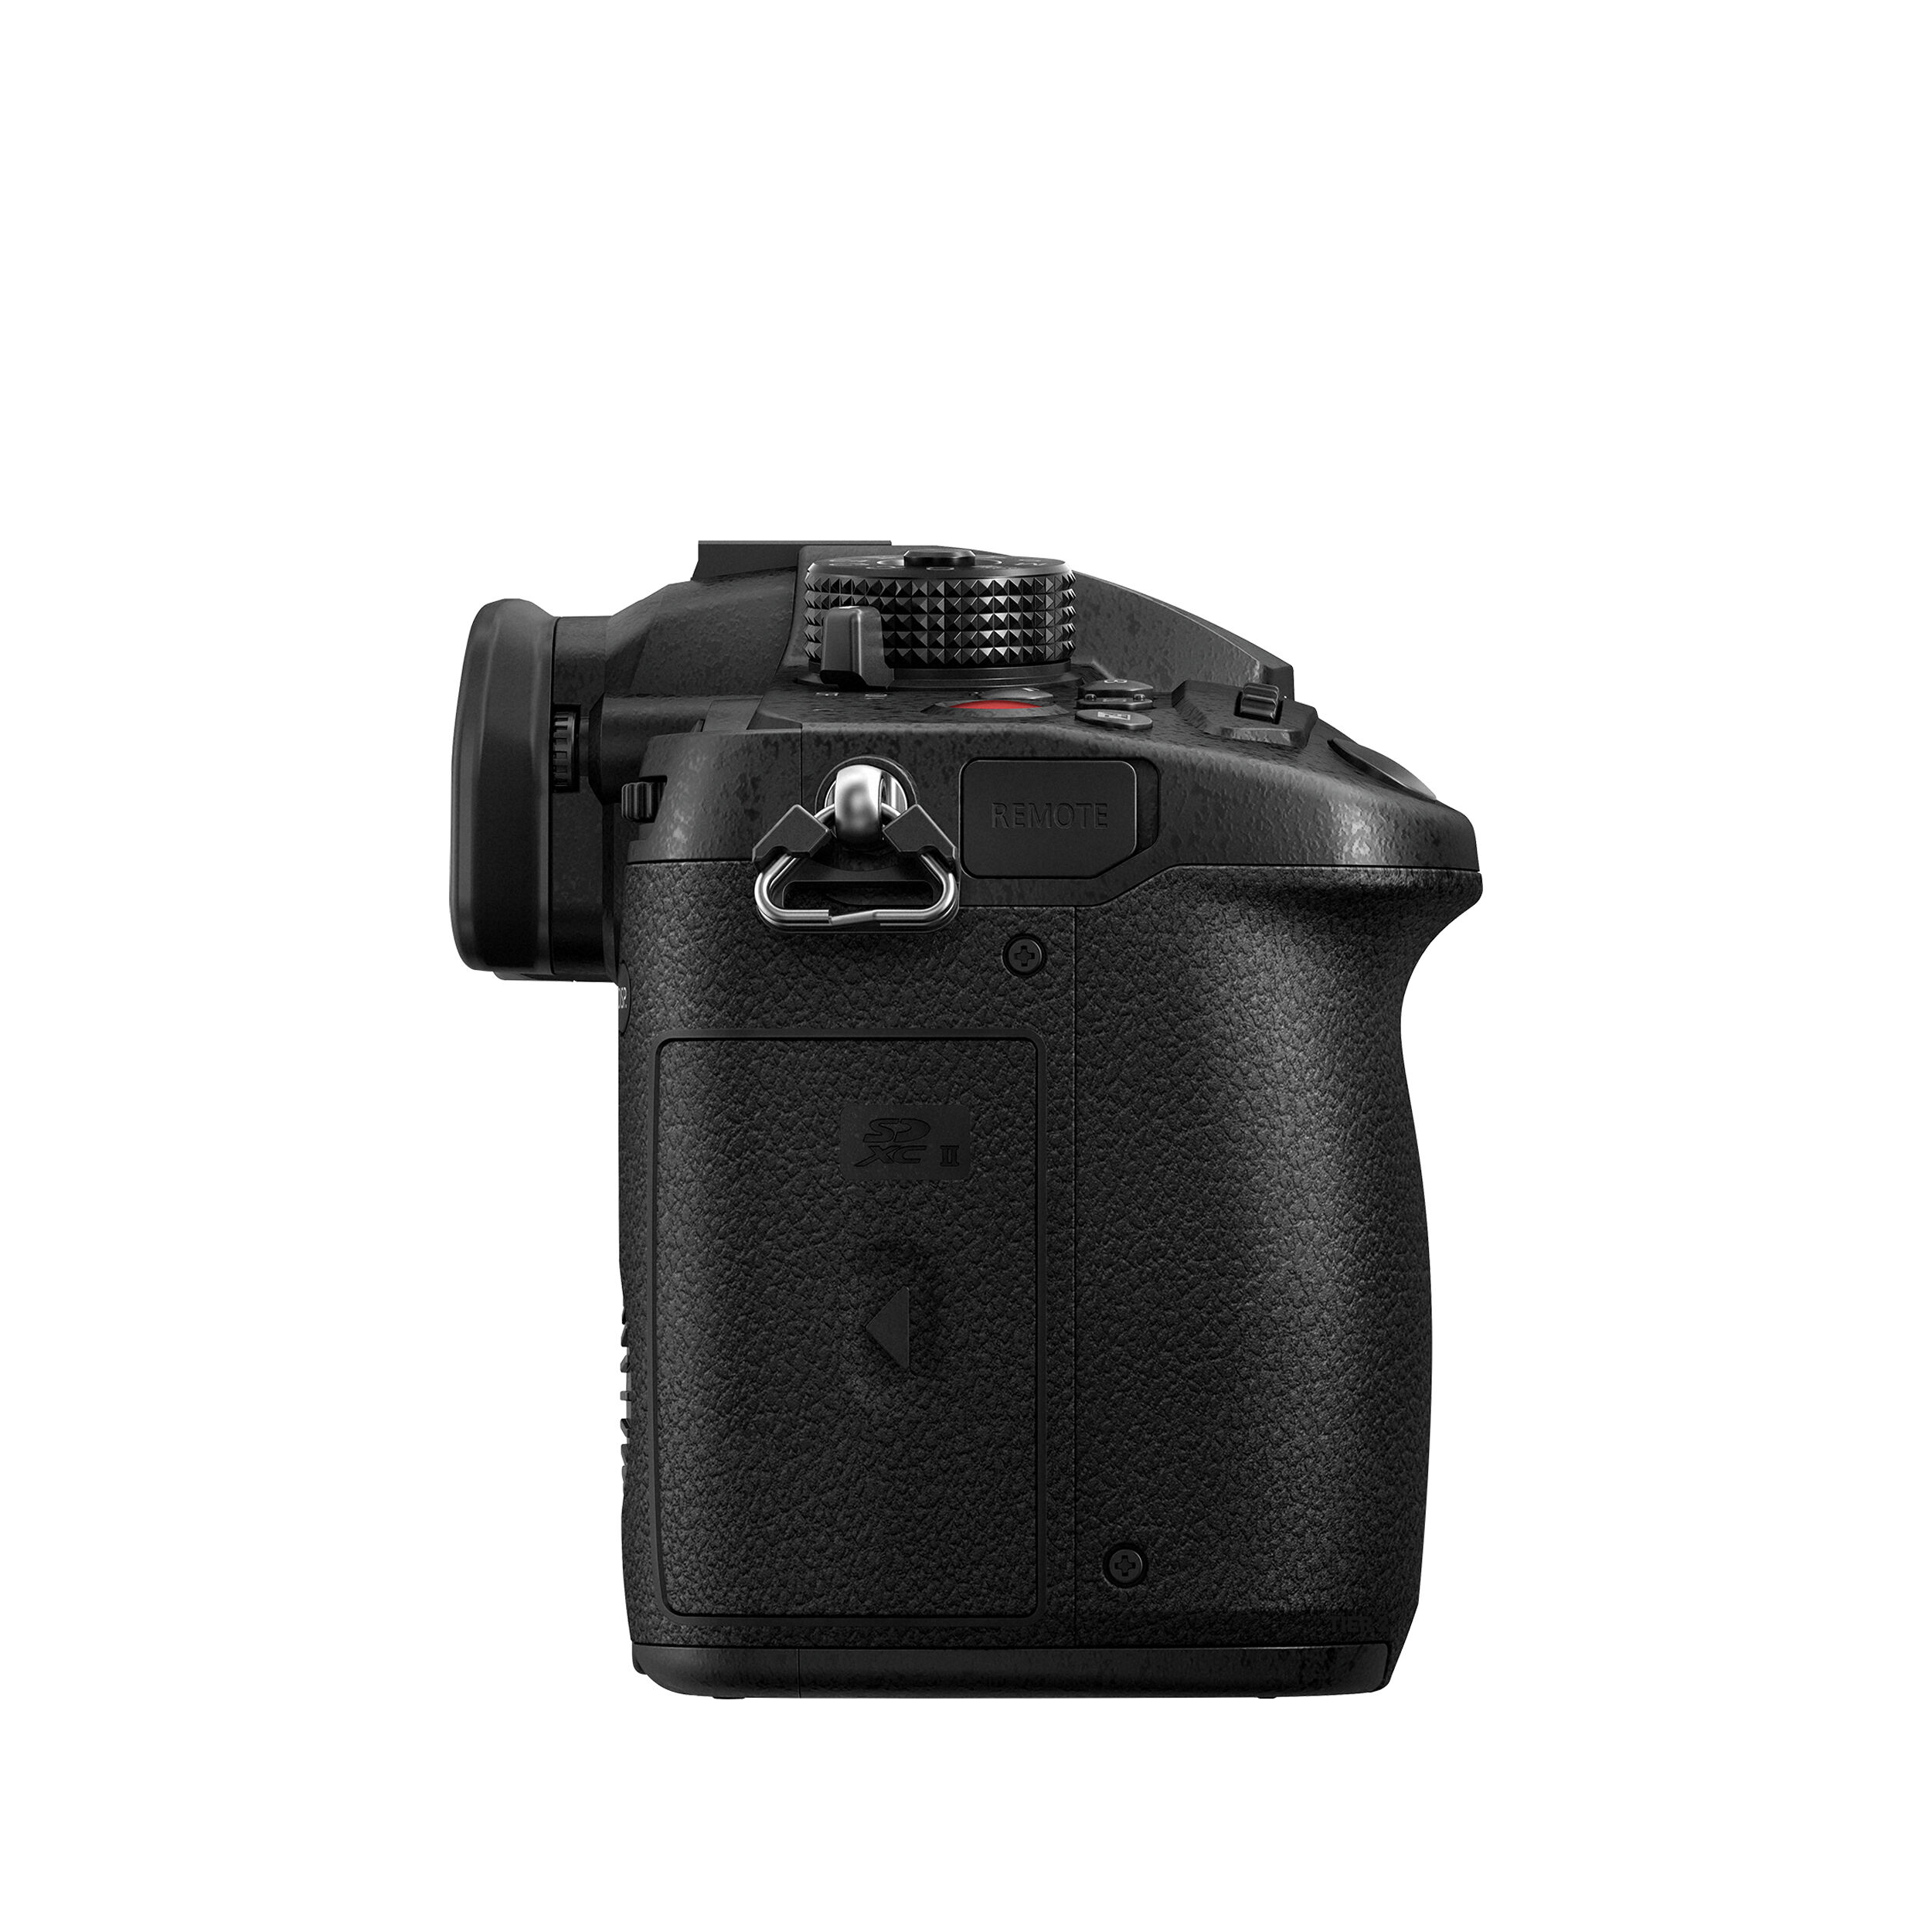 Panasonic Lumix GH5 II Mirrorless Camera